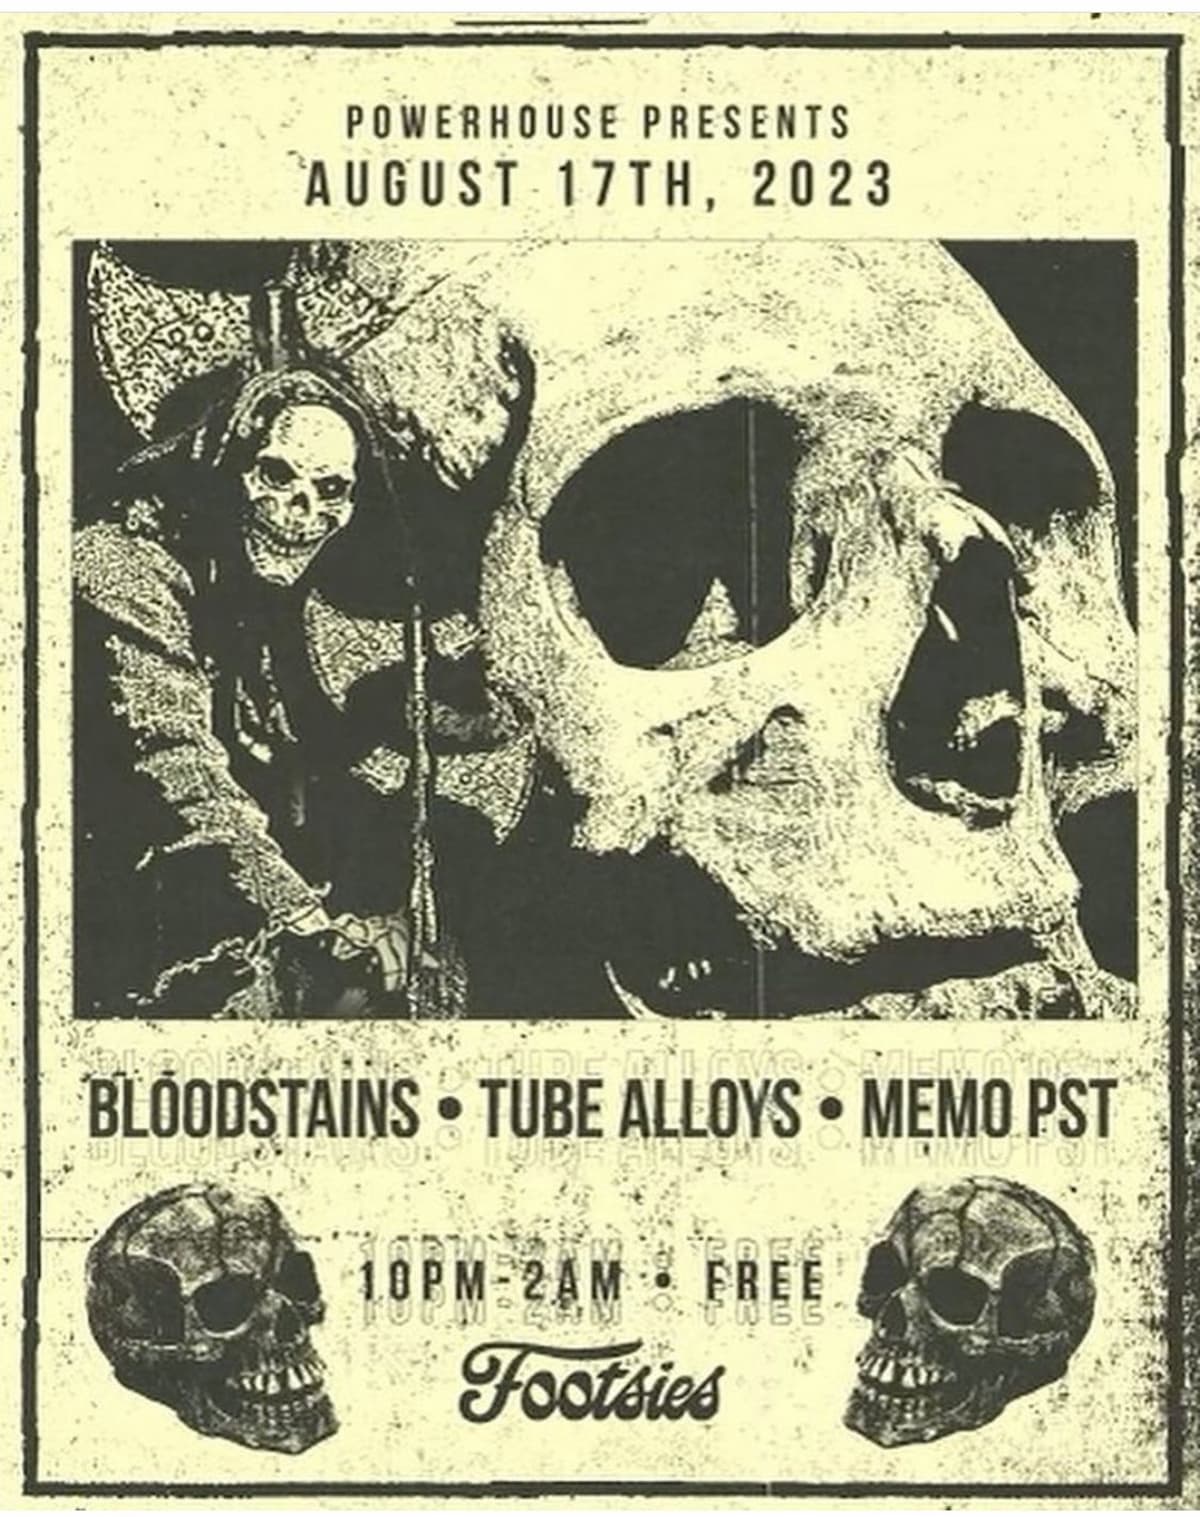 Bloodstains / Tube Alloys / Memo PST